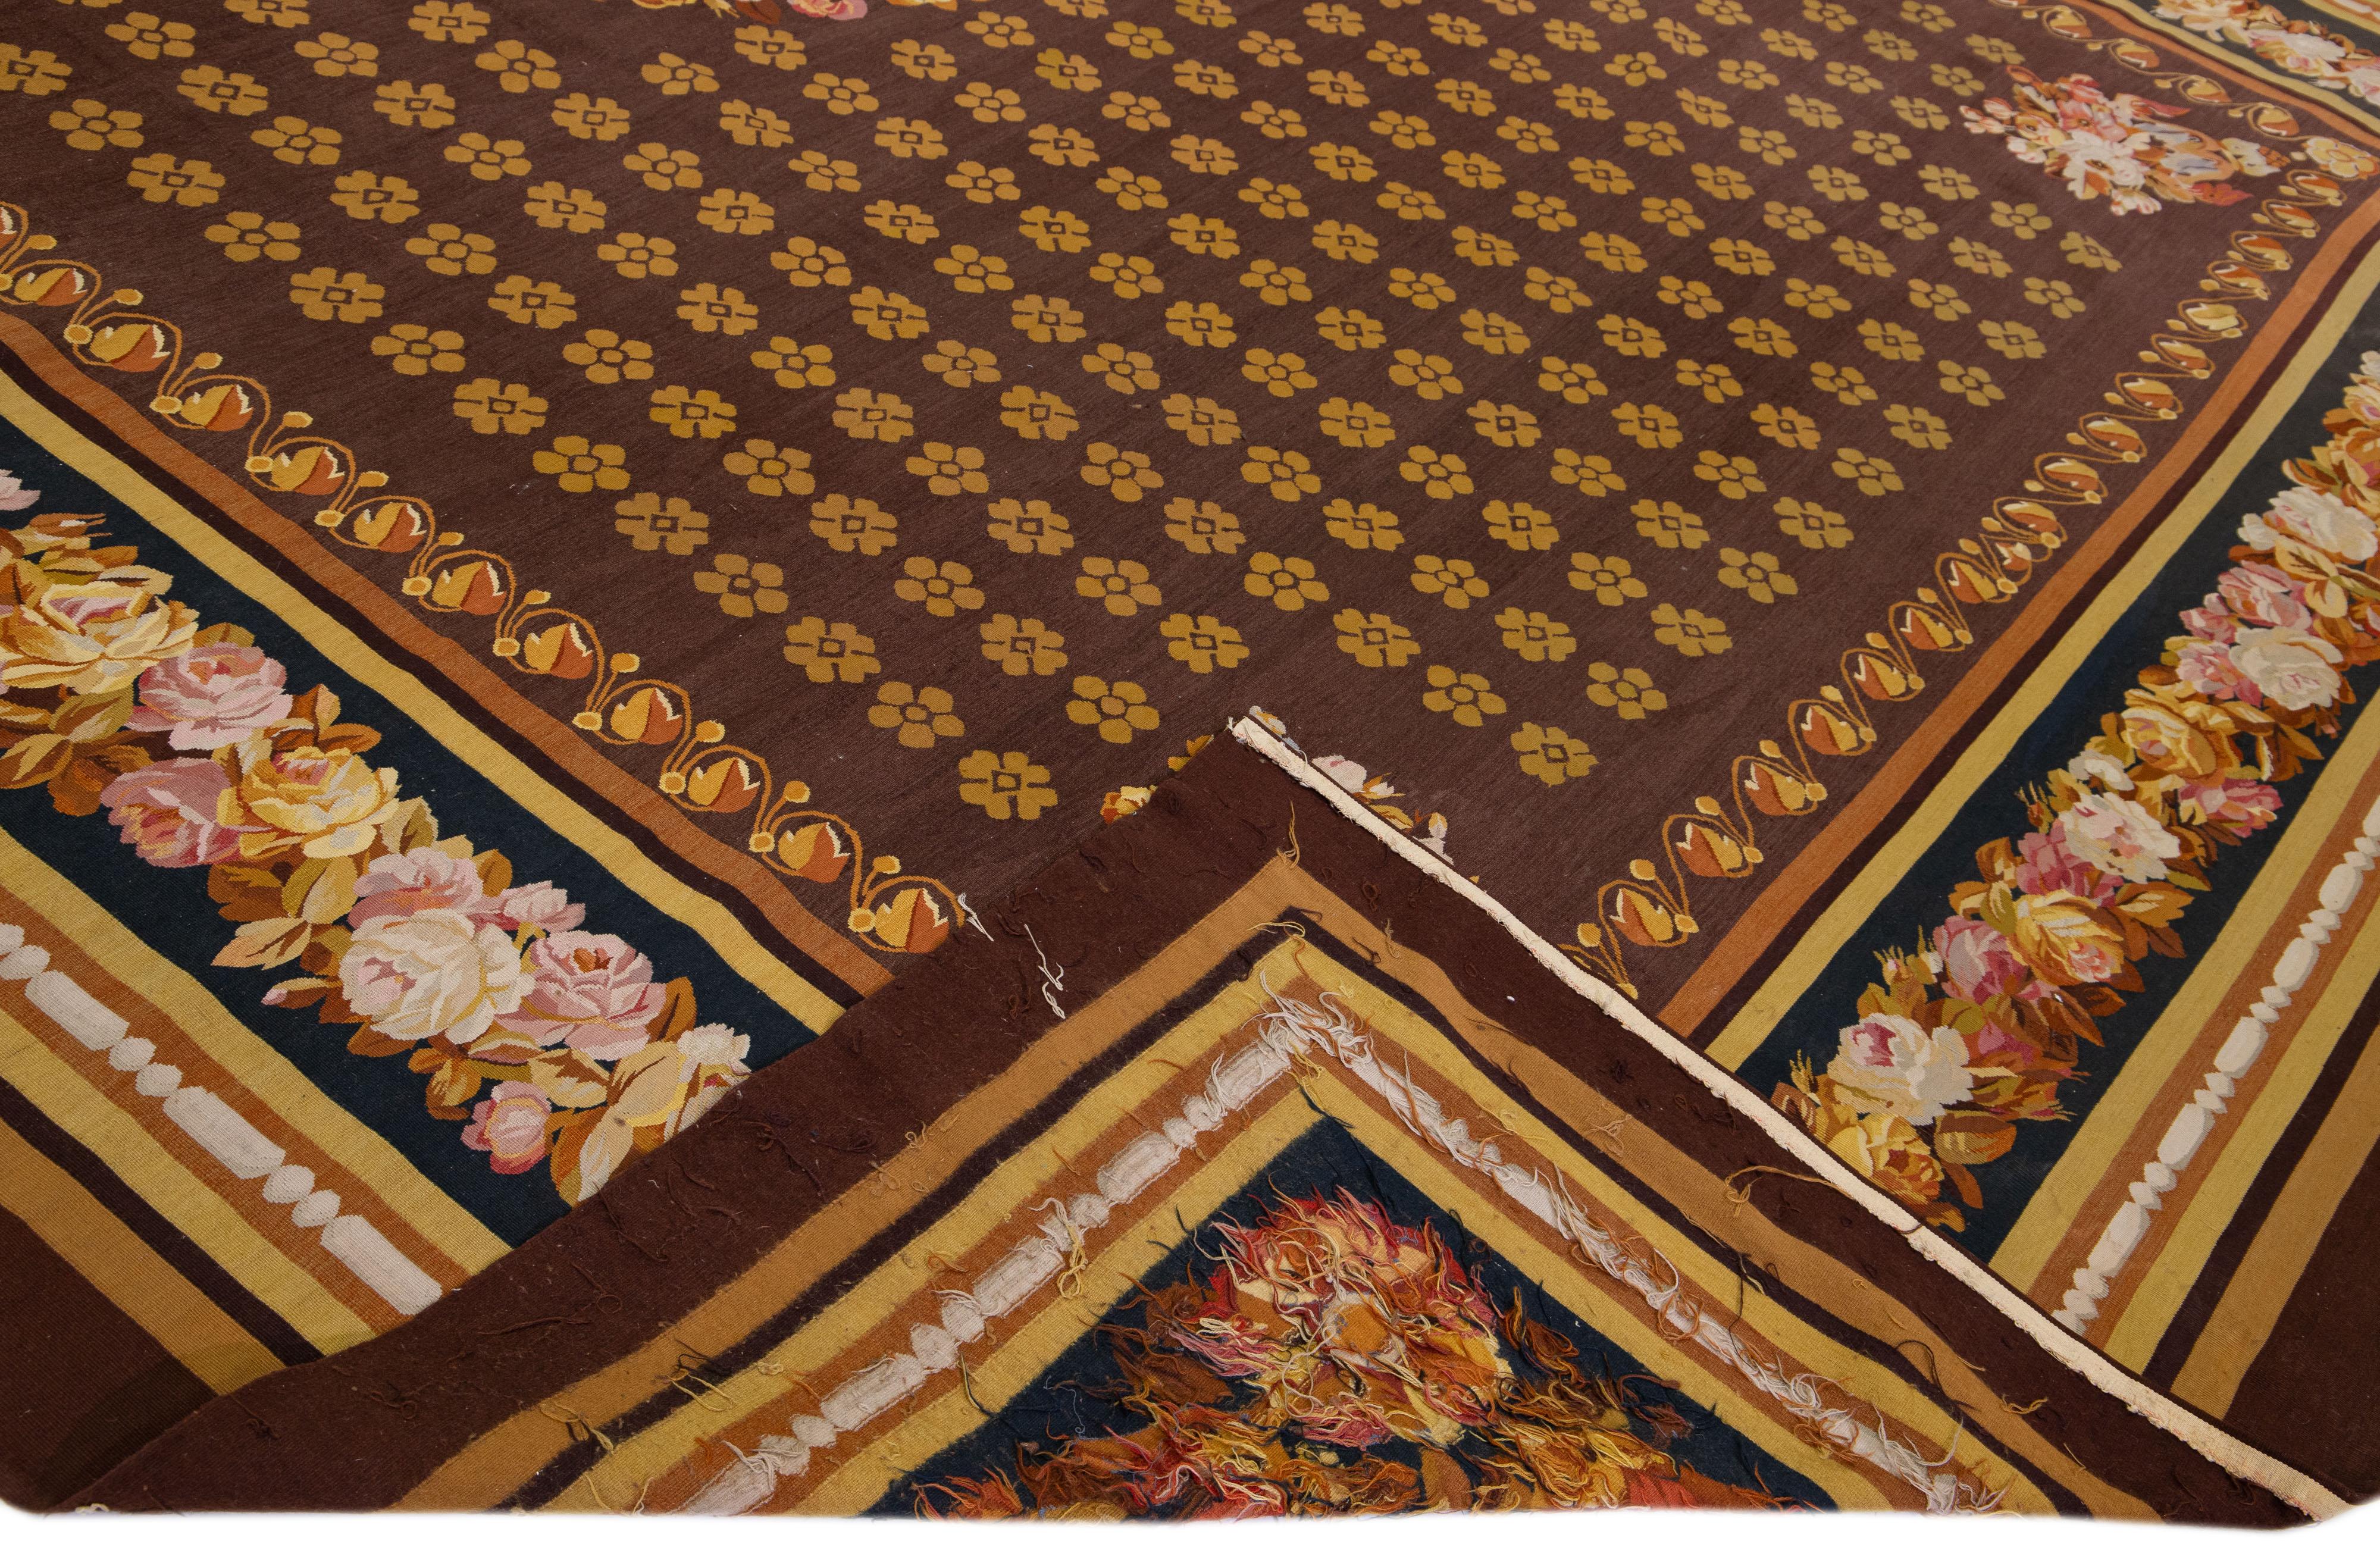 Schöne Vintage Aubusson Nadelspitze Wollteppich mit einer braunen Farbe Feld. Dieses Stück hat feine Details mit einem eleganten floralen Muster im gesamten Design.

Dieser Teppich misst 14'8